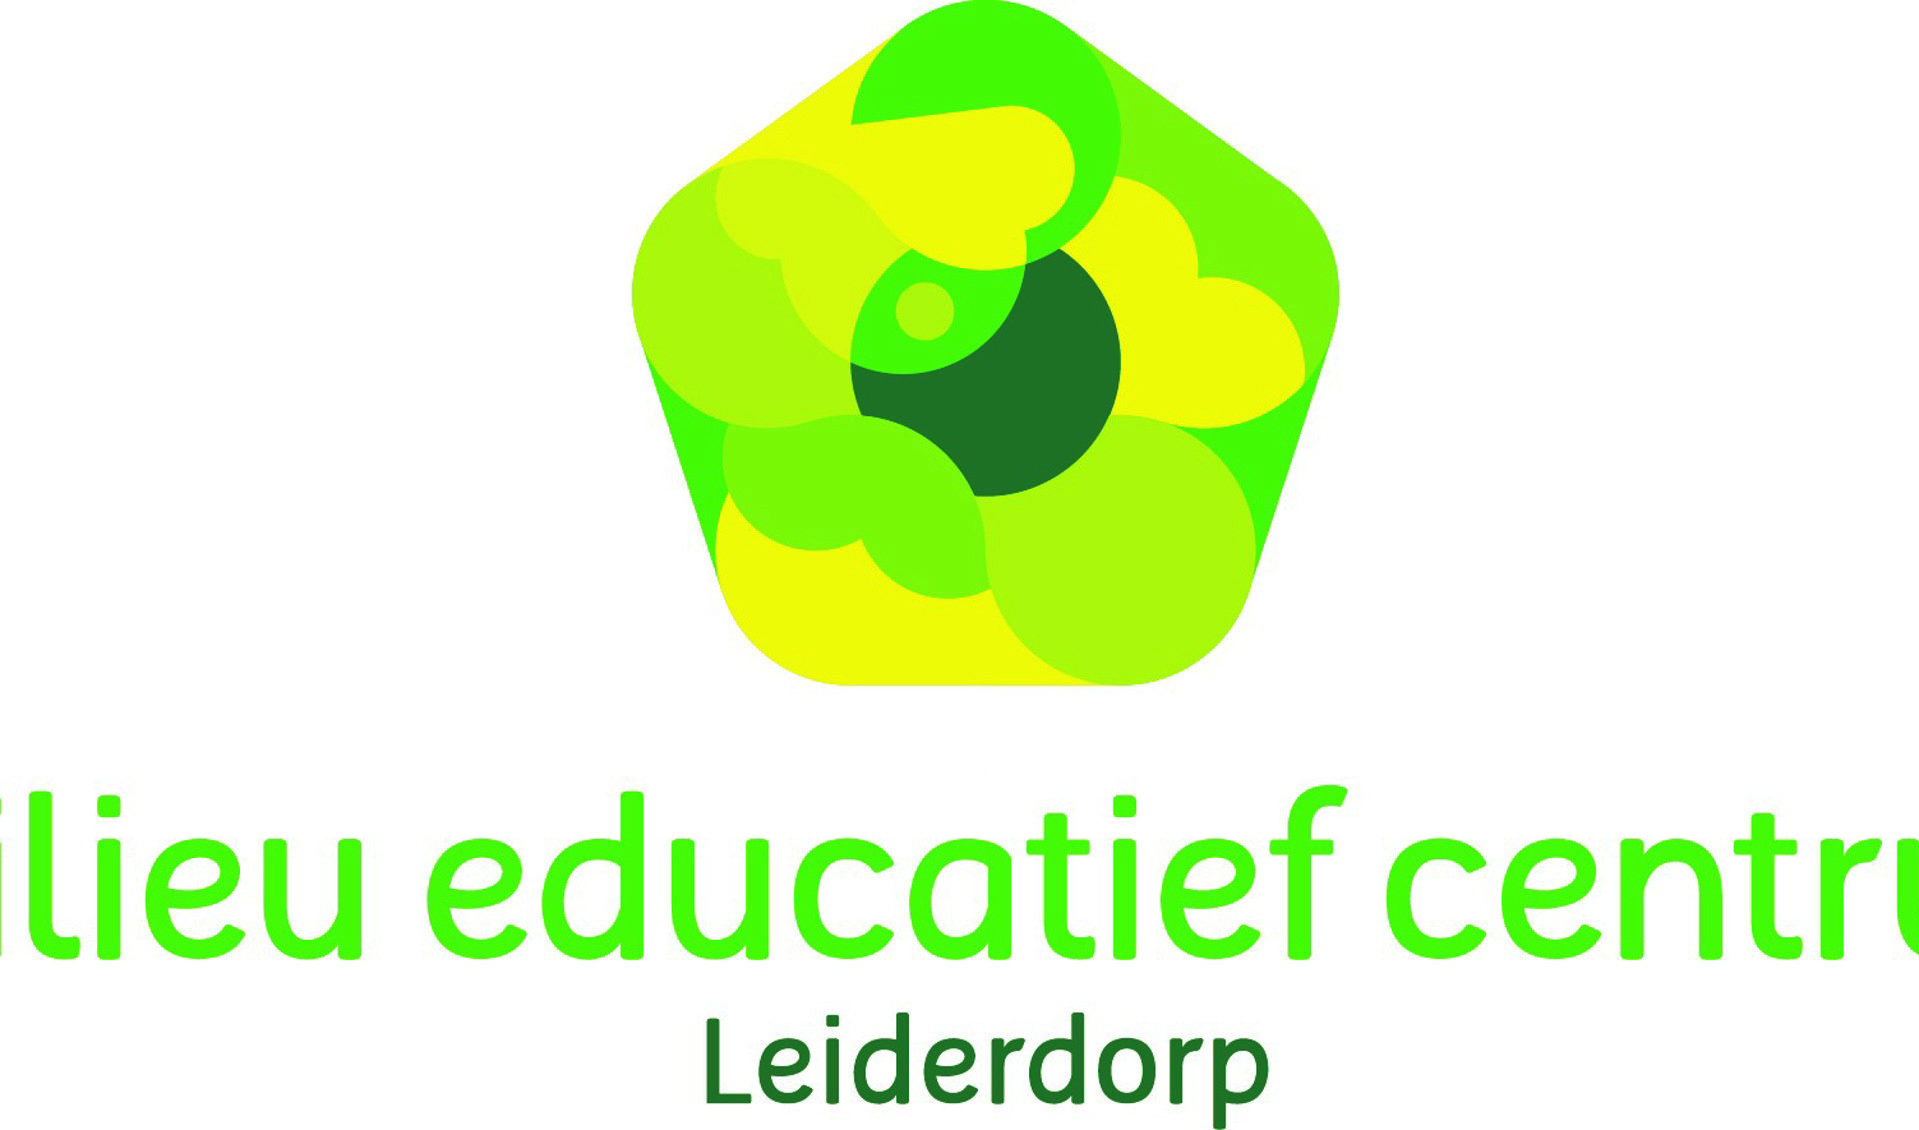 Het nieuwe log van het Milieu Educatief Centrum Leiderdorp